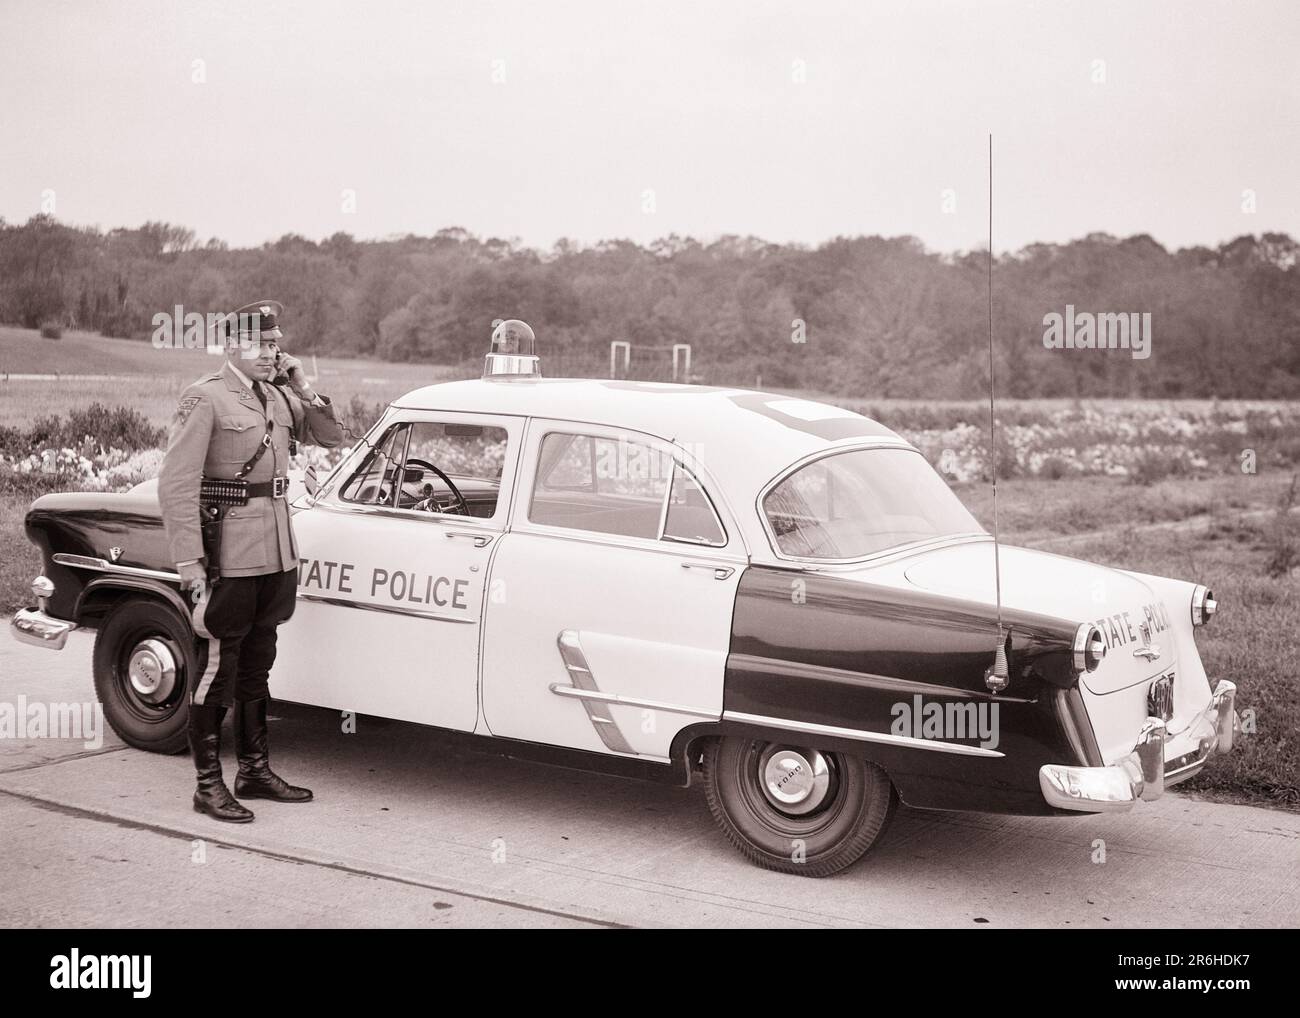 1950S NJ STATE POLICE PATROUILLENWAGEN TROOPER ÜBER HANDY MIT DEM HAUPTQUARTIER REDEN ANDERE AUTOS ODER FLUGZEUG NEW JERSEY USA - Q54353 CPC001 HARS KARRIERE DIENEN FAHRZEUGSICHERHEITSTECHNOLOGIE SICHERHEITSINFORMATIONEN FORD LIFESTYLE OVERHEAD JOBS KOMMUNIZIEREN KOPIERRAUM VOLLE LÄNGE HIGHWAY PERSONS INSPIRATION AUTO MÄNNCHEN ORDER OFFICER BERUF VERTRAUEN TRANSPORT B&W COP QUALIFIKATION BERUF SCHÜTZEN FÄHIGKEITEN HOCHWINKEL ABENTEUER UND AUTOS KARRIERE EXTERNE FÜHRUNGSEBENE FORTSCHRITT STOLZ GELEGENHEIT AUTORITÄT BERUFE TELEFONE UNIFORMEN VERWENDEN CONNECTION PATROL KONZEPTIONELLE TELEFONE AUTOS Stockfoto